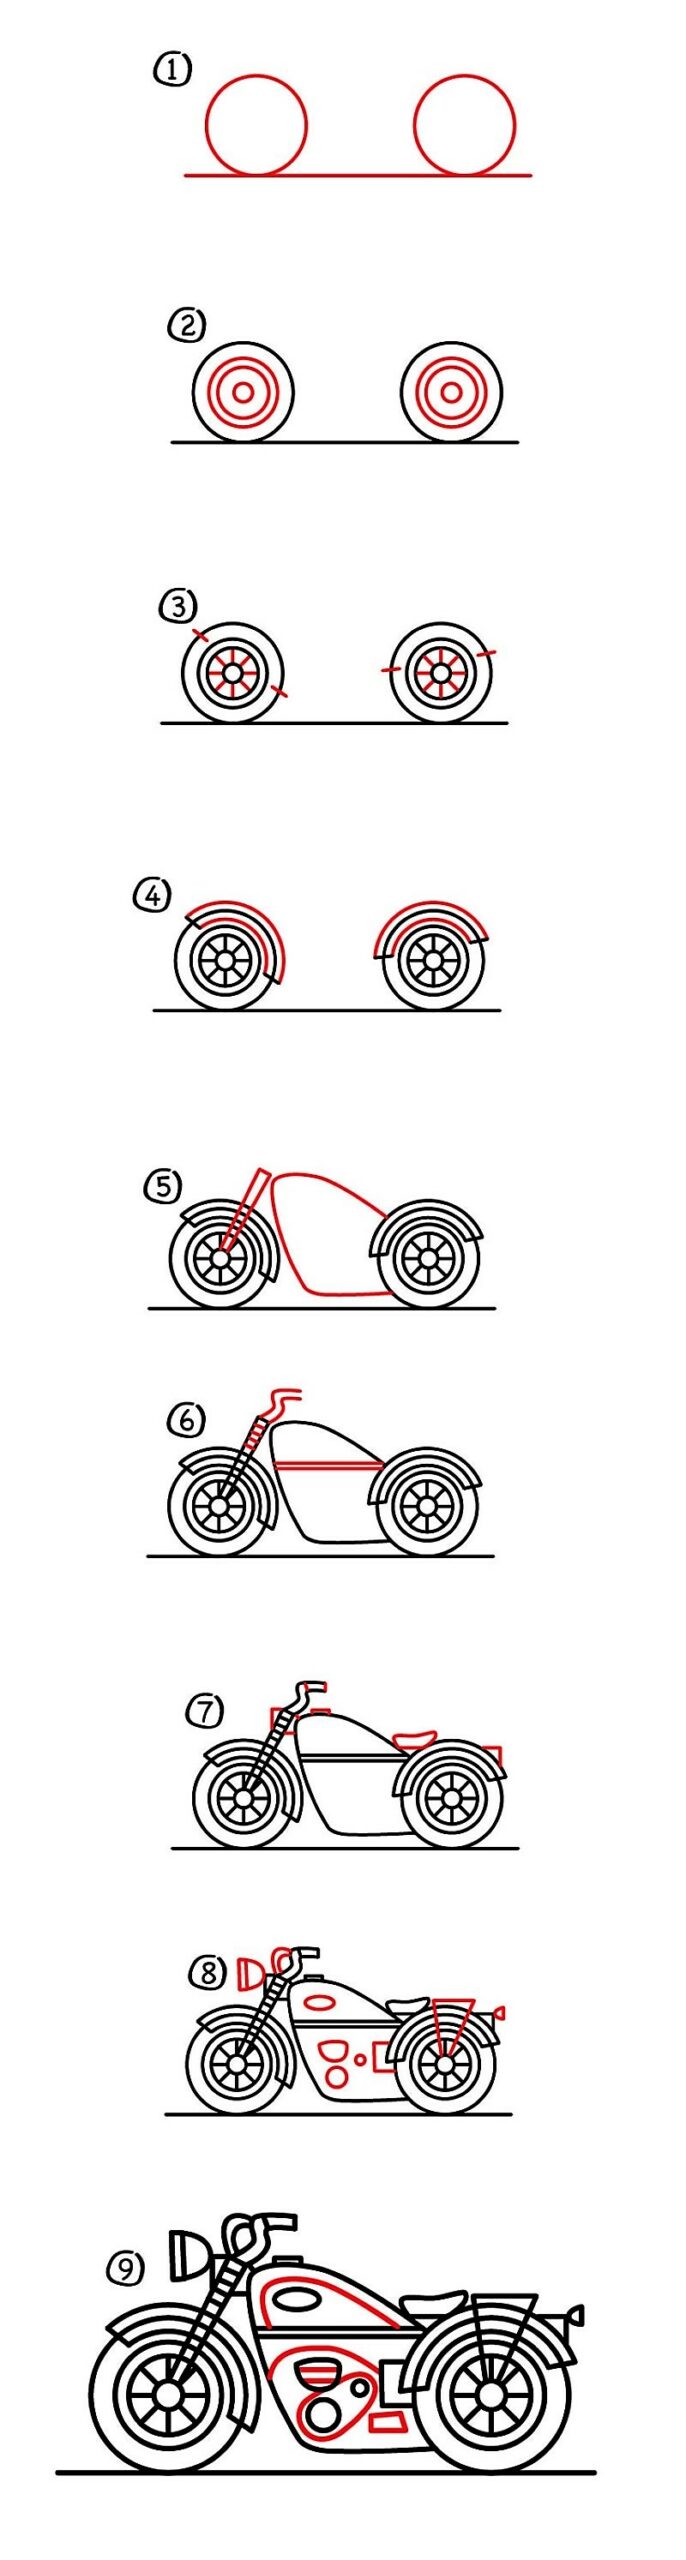 Motosiklet fikri 15 çizimi